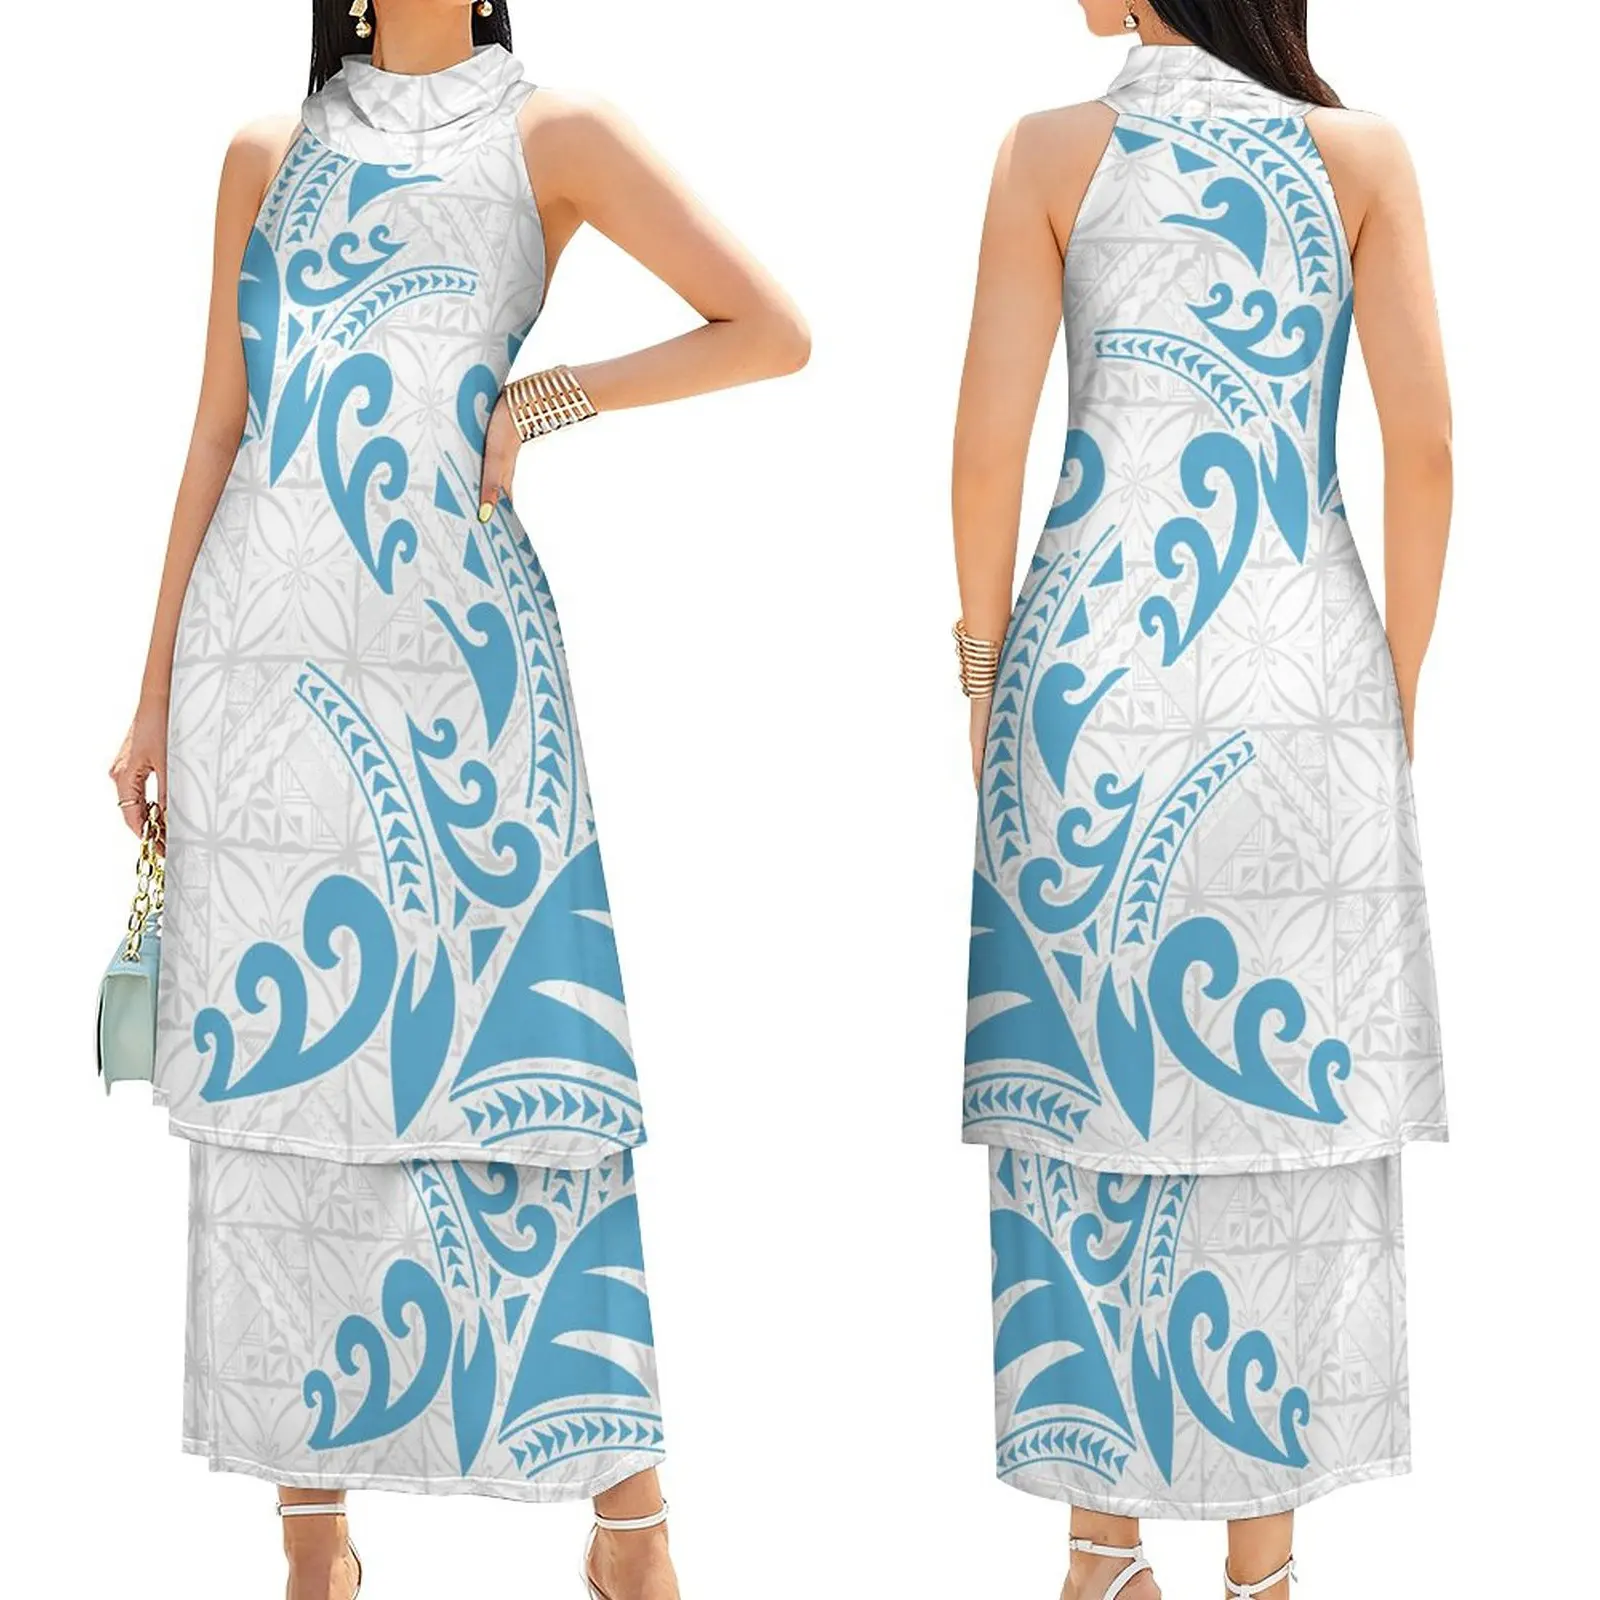 Новый дизайн Самоа puletasi с принтом, имитирующим тату, женское платье без рукавов белого и светло-голубого цвета Элегантные повседневные платья для женщин одежда высшего качества